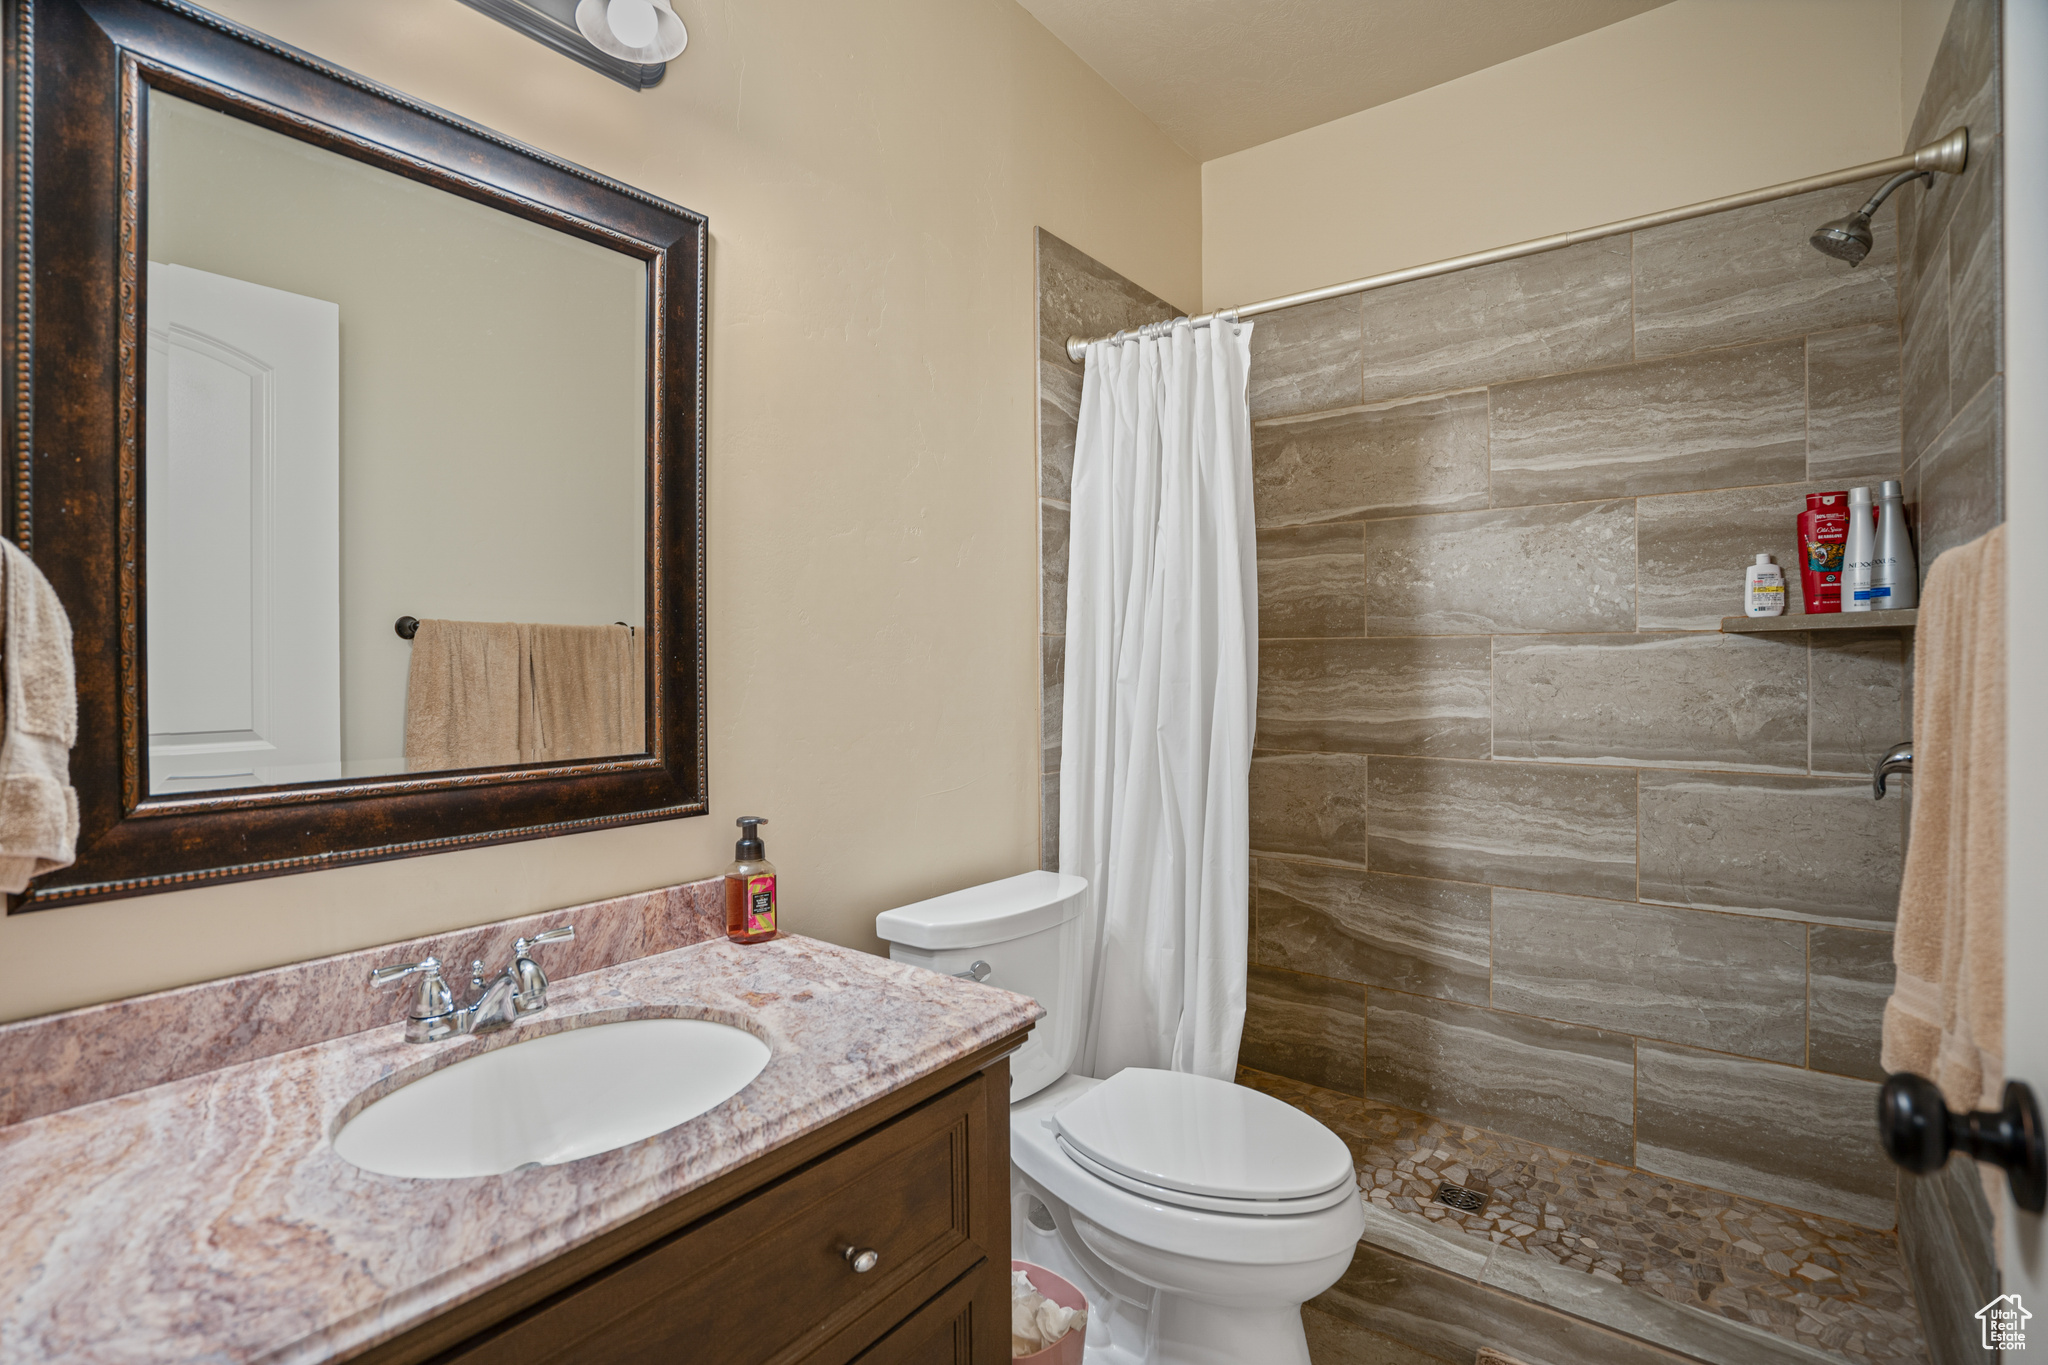 Bathroom featuring hardwood / wood-style floors, walk in shower, vanity, and toilet